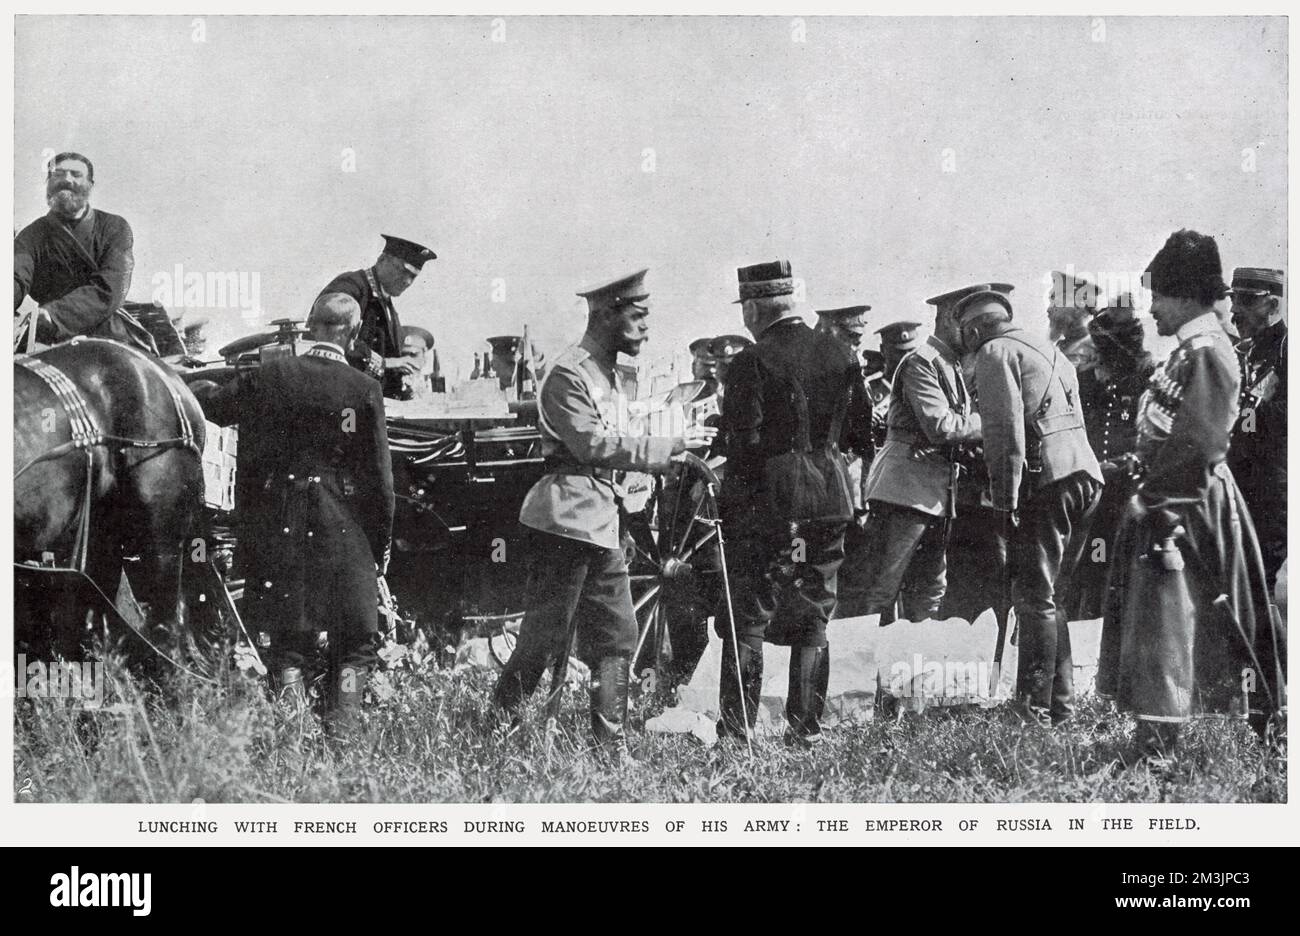 Le tsar Nicholas II se lance en lundant avec des officiers français pendant les manœuvres de son armée. La Russie devait former une triple alliance avec la France et la Grande-Bretagne pendant la première Guerre mondiale Banque D'Images